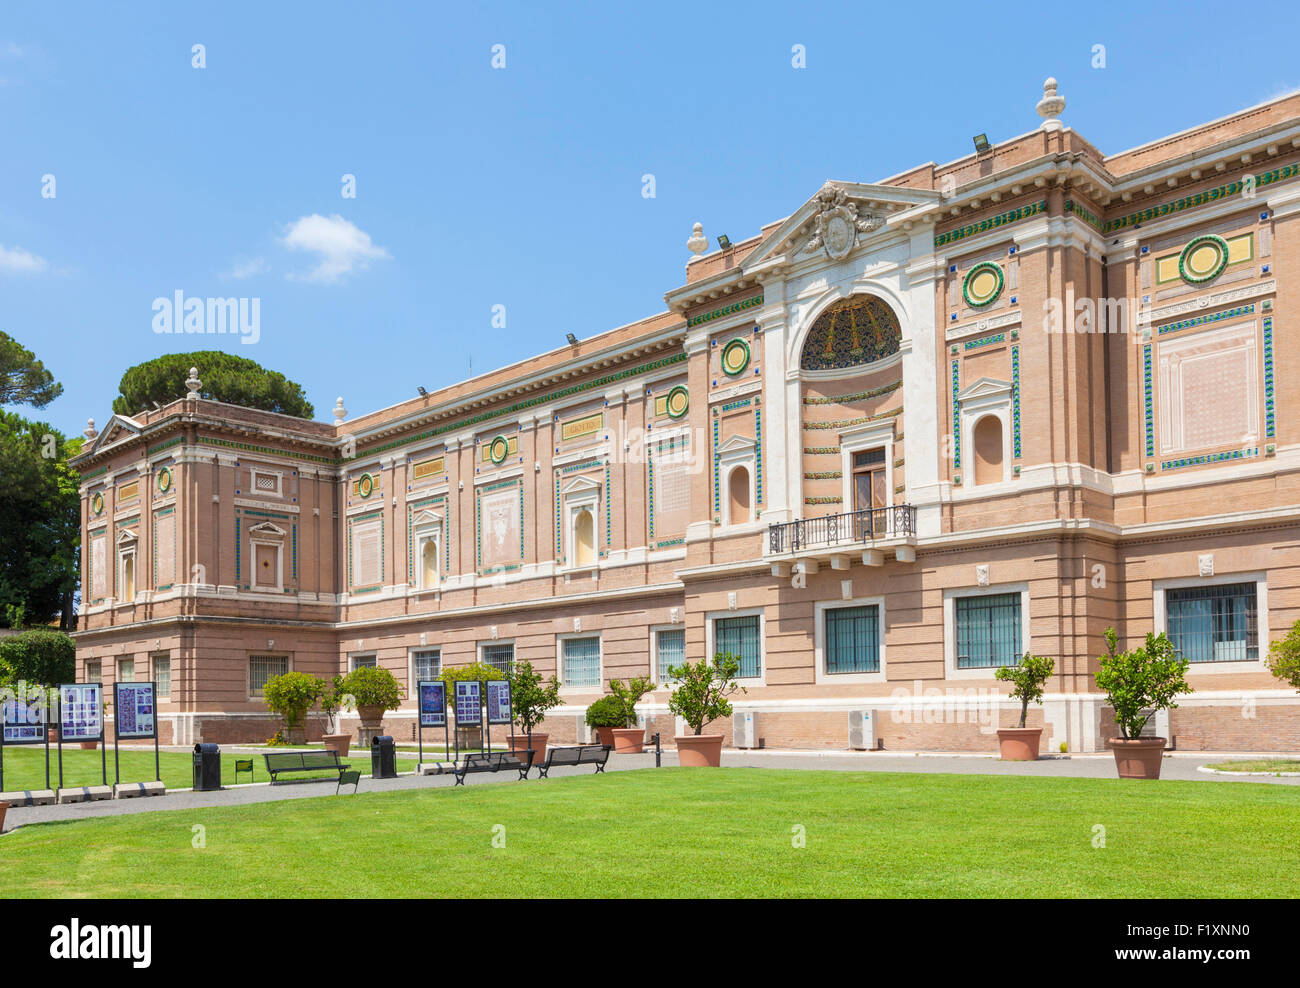 die Pinakothek-Galerie und der Giardino Quadrato oder Square Garden im Vatikanischen Museum Vatikanstadt Rom Italien Europa EU Stockfoto